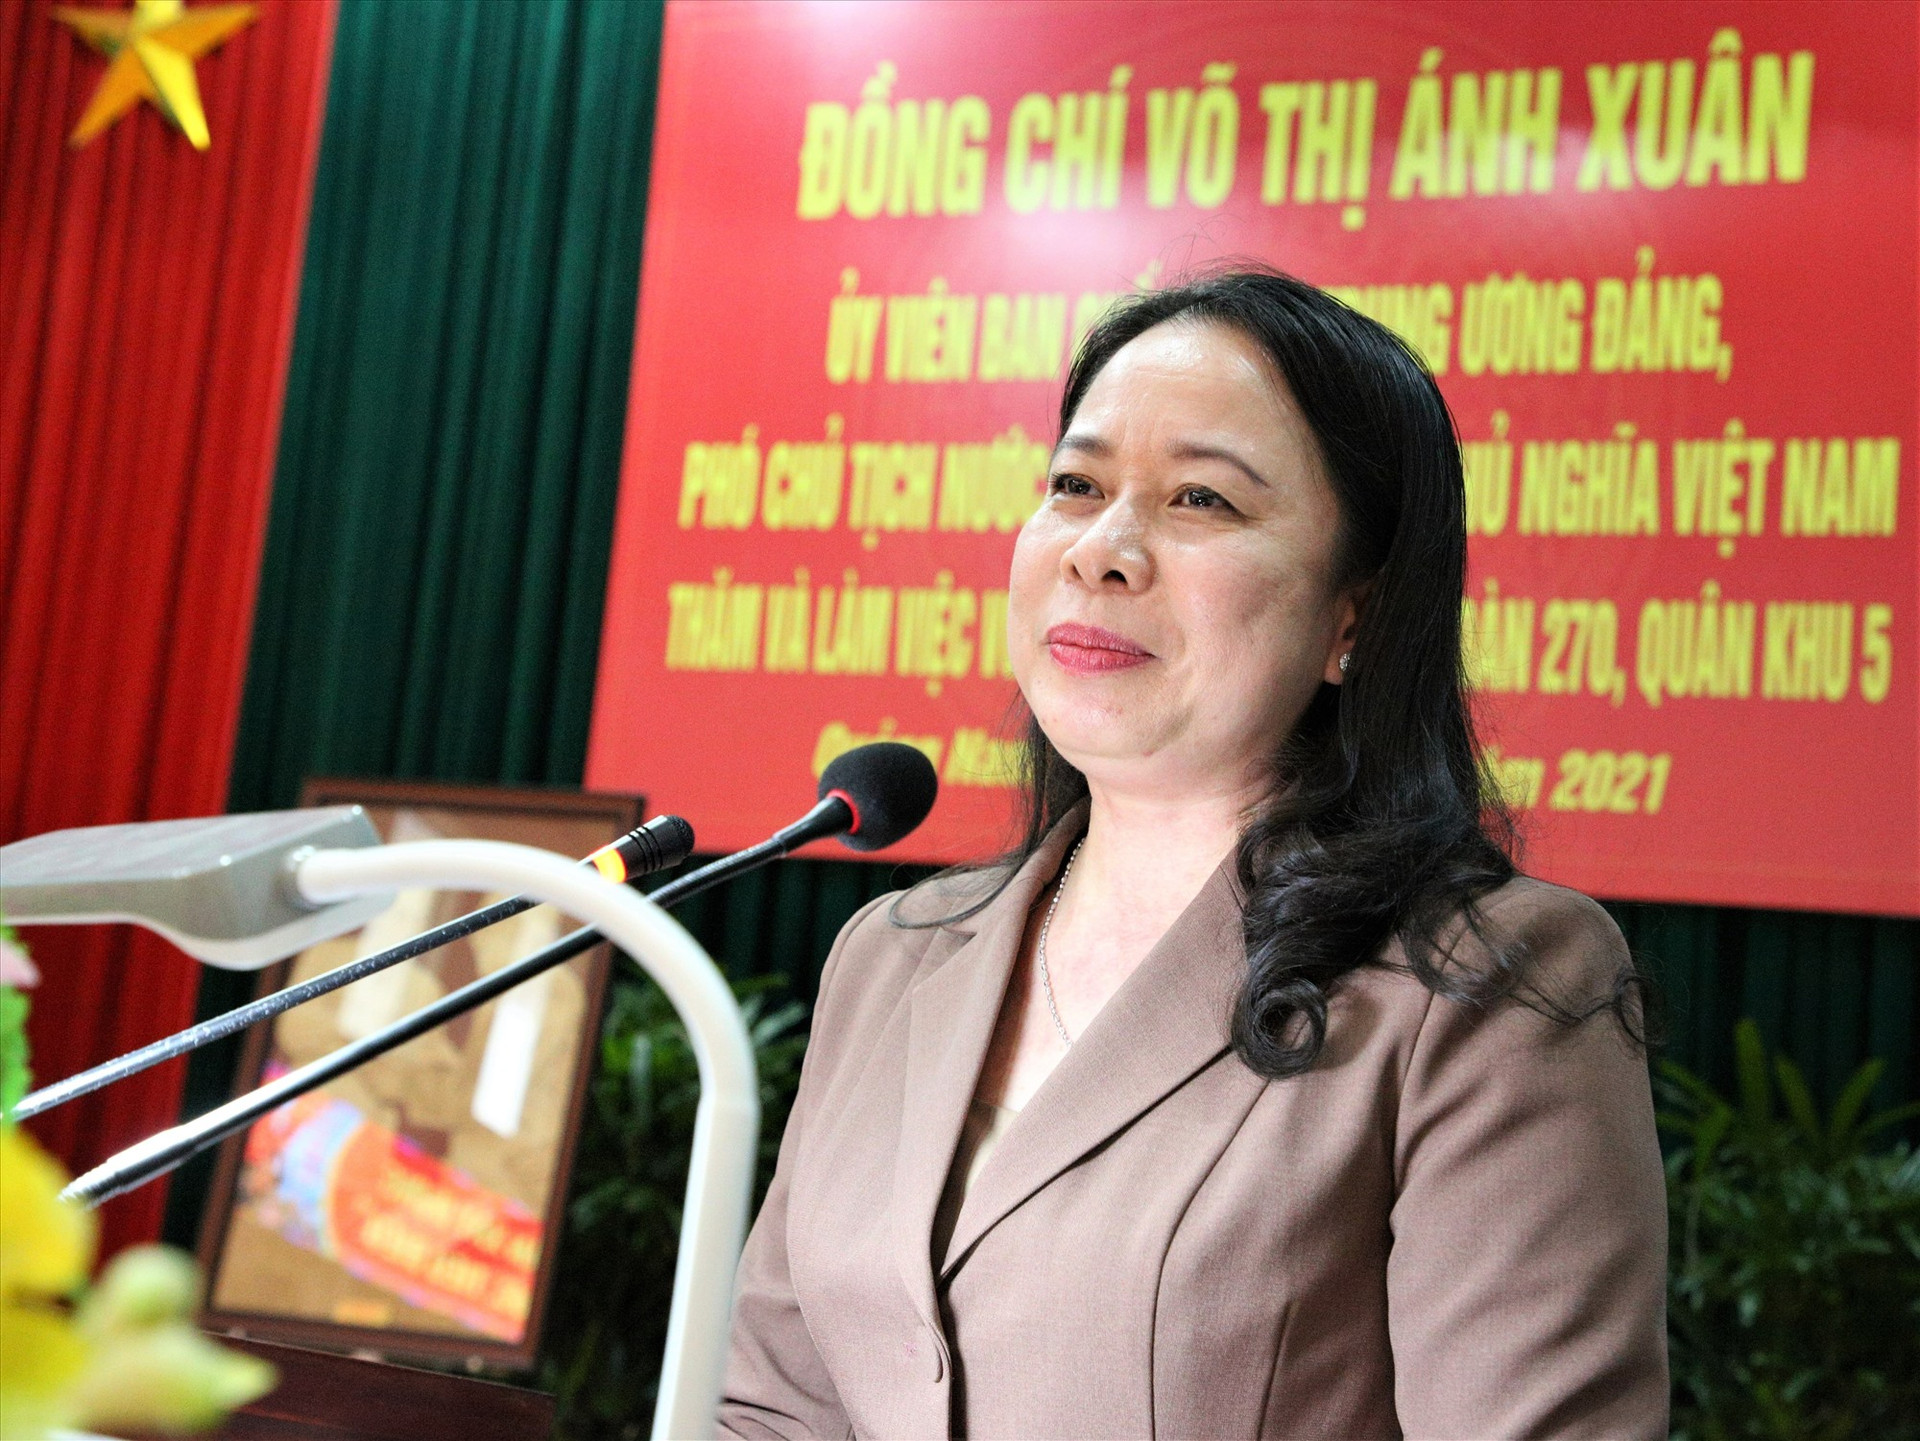 Phó Chủ tịch nước Võ Thị Ánh Xuân phát biểu tại buổi đến thăm cán bộ chiến sĩ Lữ đoàn Công binh 270. Ảnh: A.N